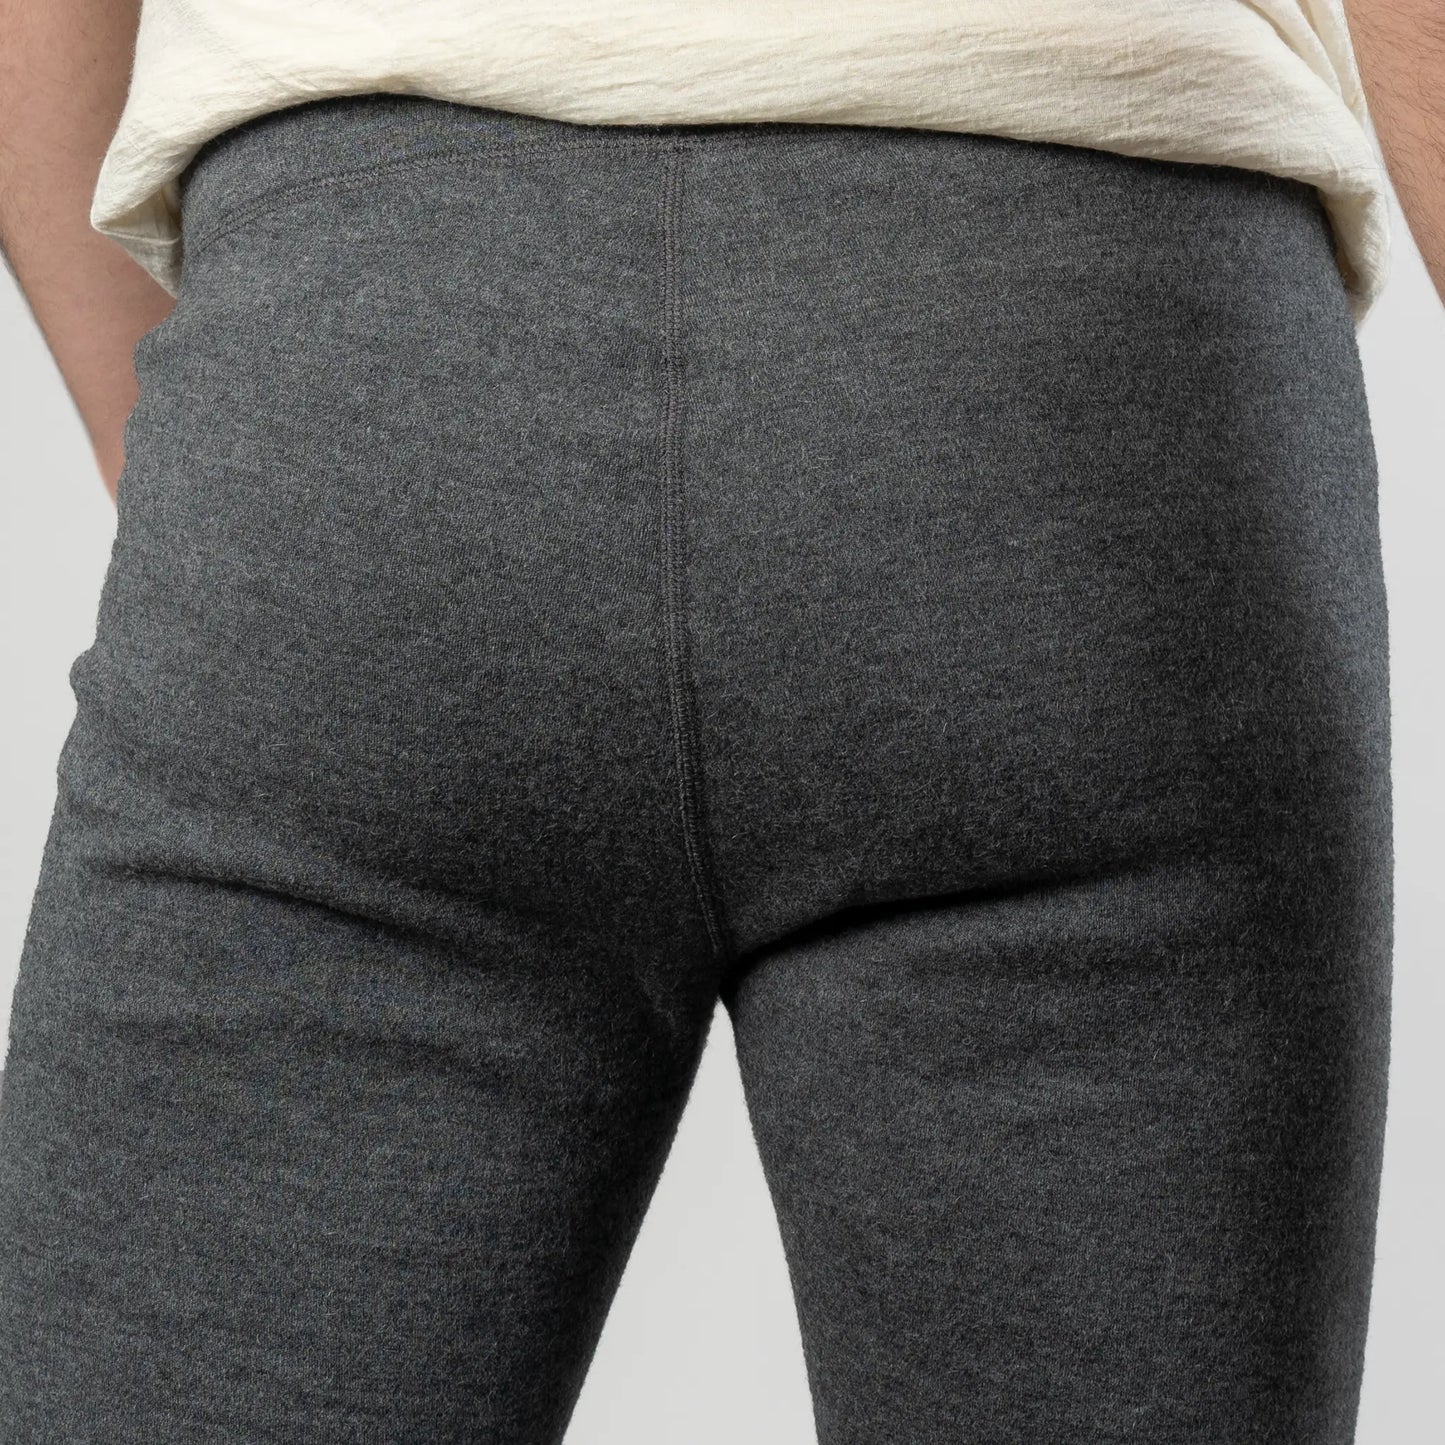 mens versatile design leggings midweight color gray